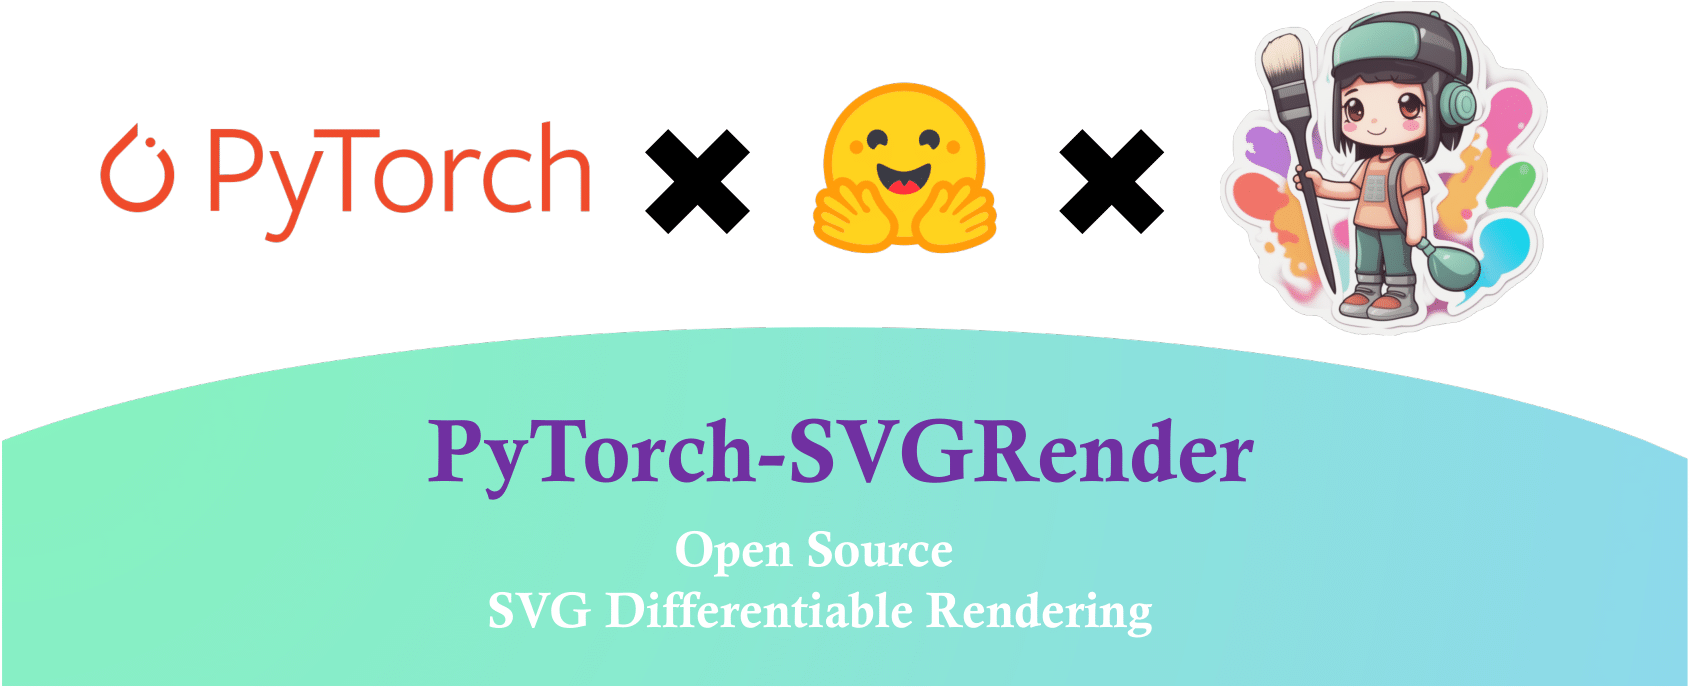 PyTorch-SVGRender